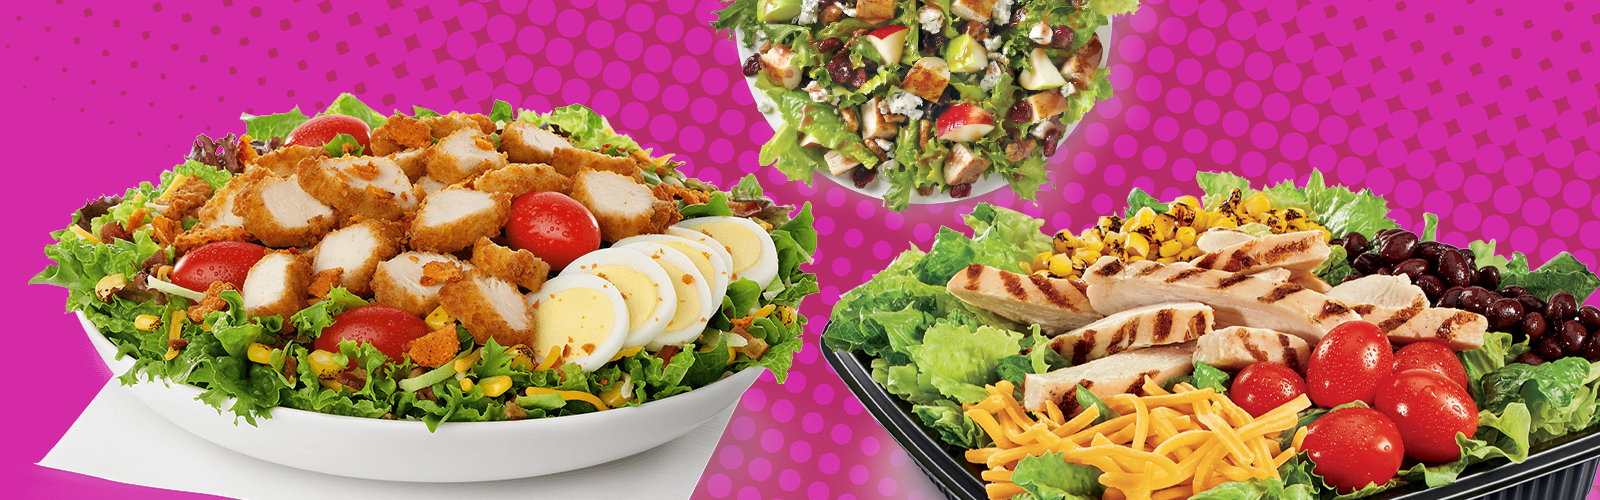 best fast food salad order